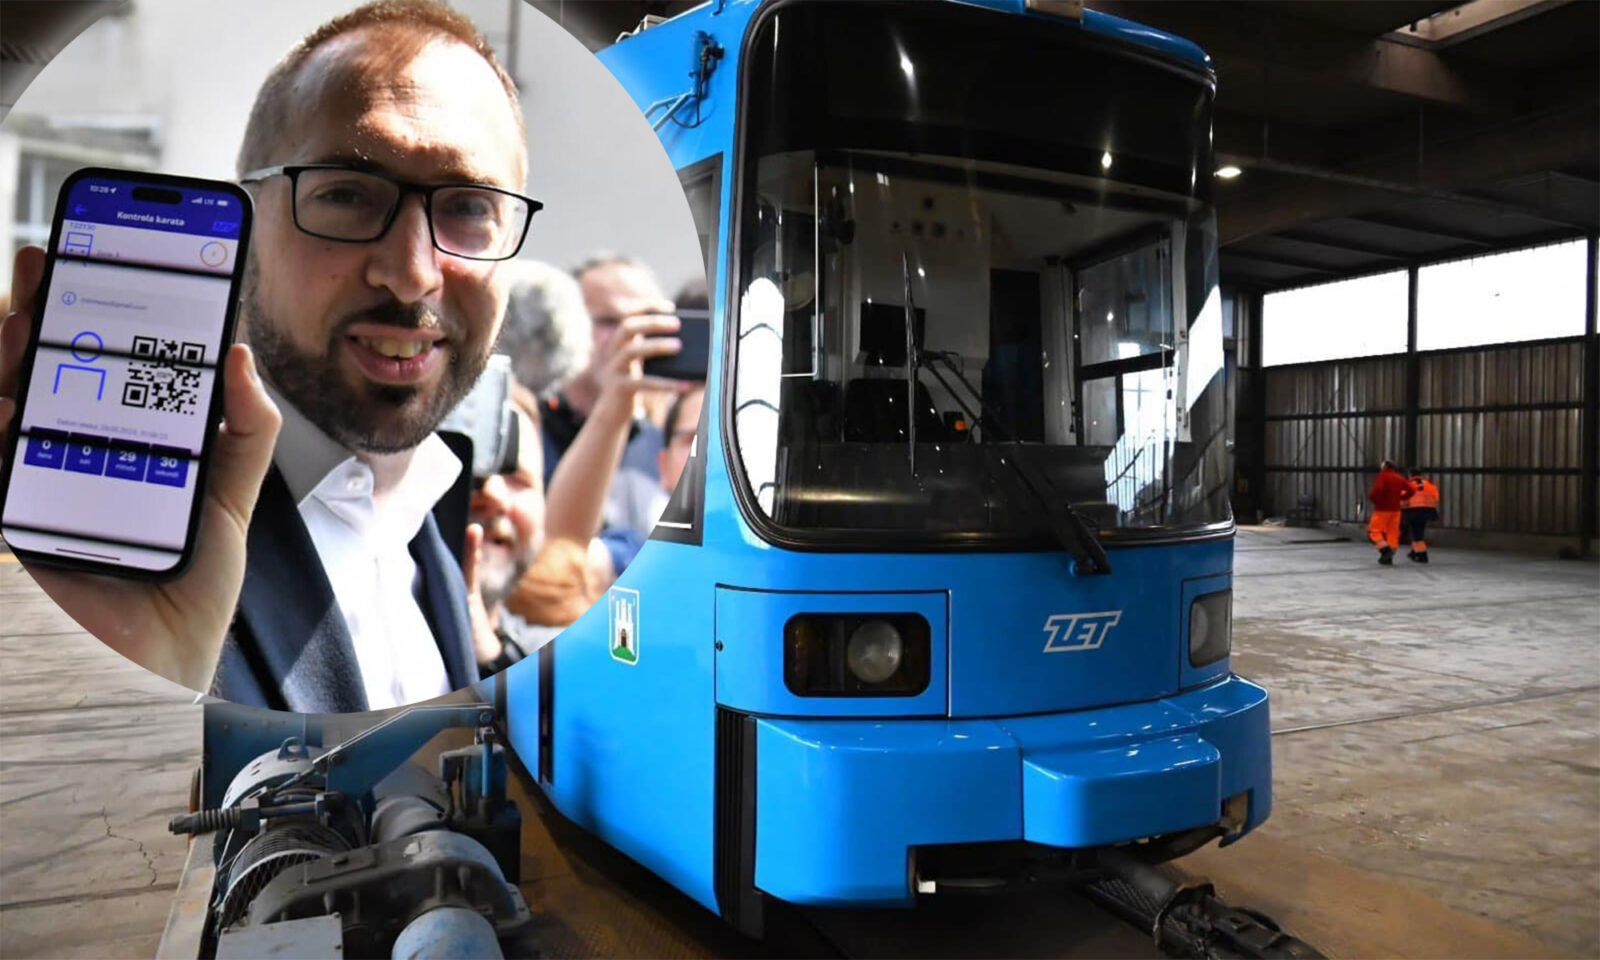 Gradonačelnik Tomašević s tramvajem iz Augsburga. Prikazuje dolazak prvog od 11 rabljenih tramvaja, ključnog koraka u unaprjeđenju zagrebačkog javnog prijevoza. Ova slika simbolizira angažman u osiguranju bolje mobilnosti uz ekonomske uštede.